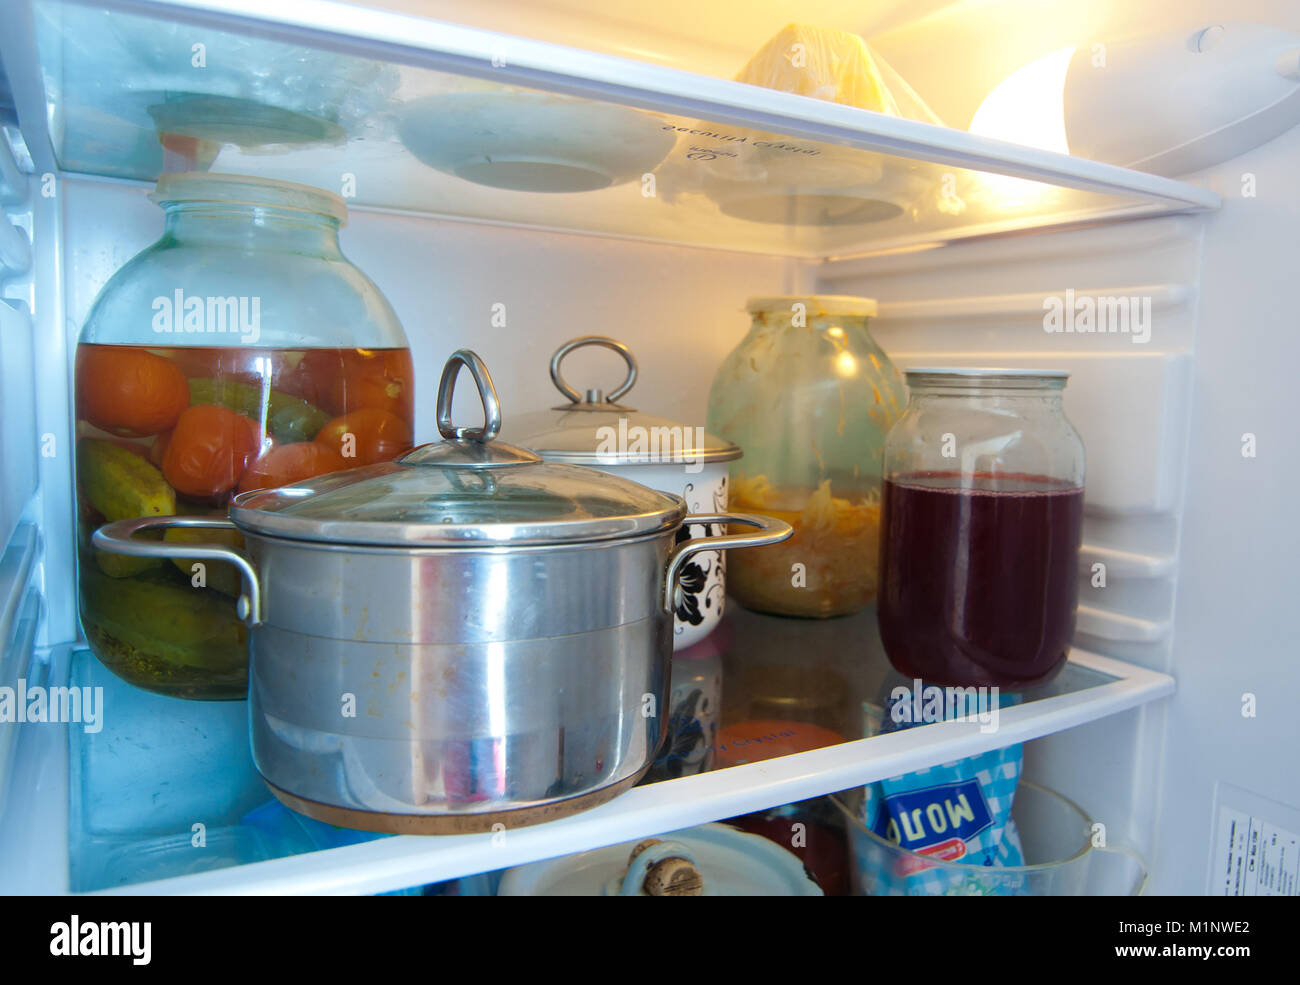 Из холодильника вынули закрытую крышкой. Кастрюля в холодильнике. Холодильники с едой и кастрюлями. Кастрюля с едой. Хранение в холодильнике с кастрюли.